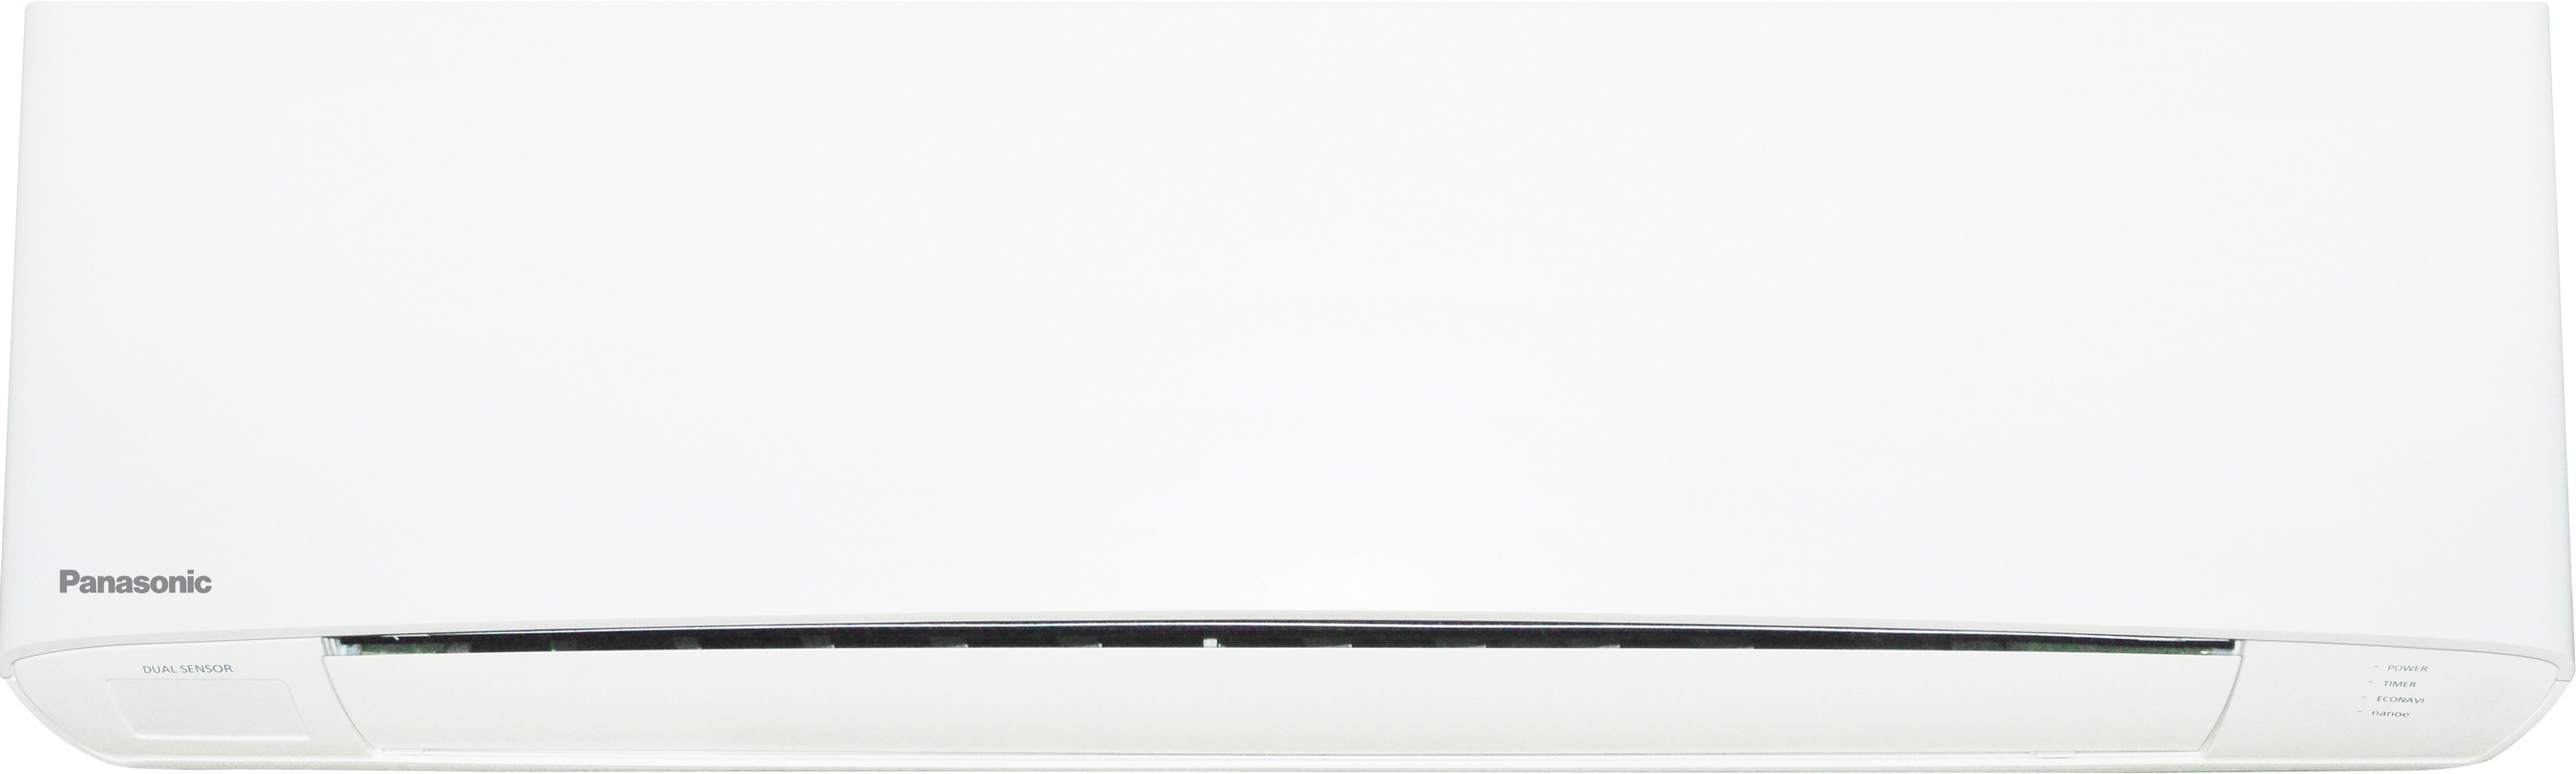 Внутренний блок мультисплит-системы Panasonic Flagship White CS-Z20TKEW цена 21000.00 грн - фотография 2